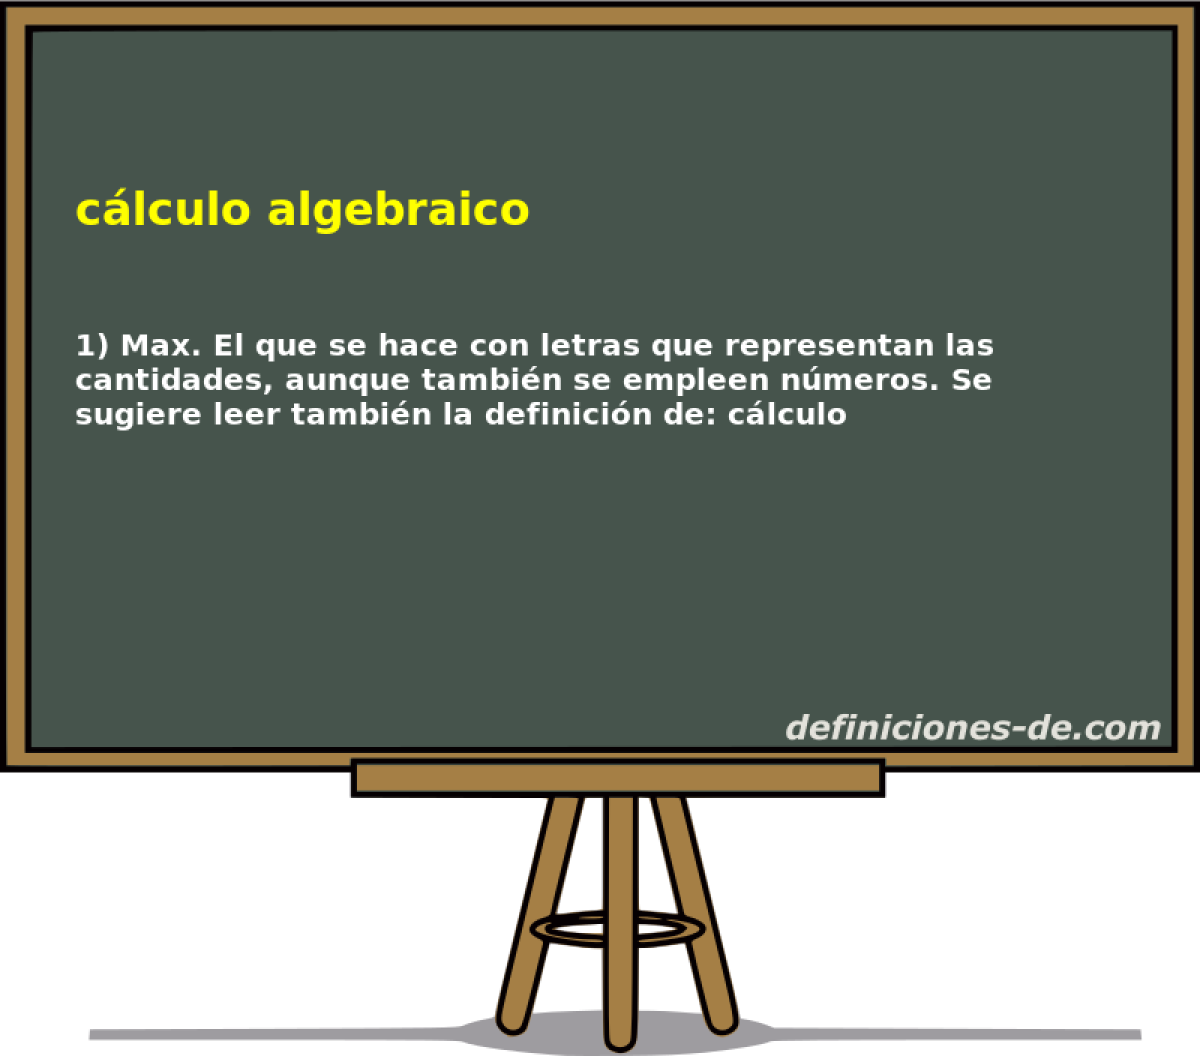 clculo algebraico 